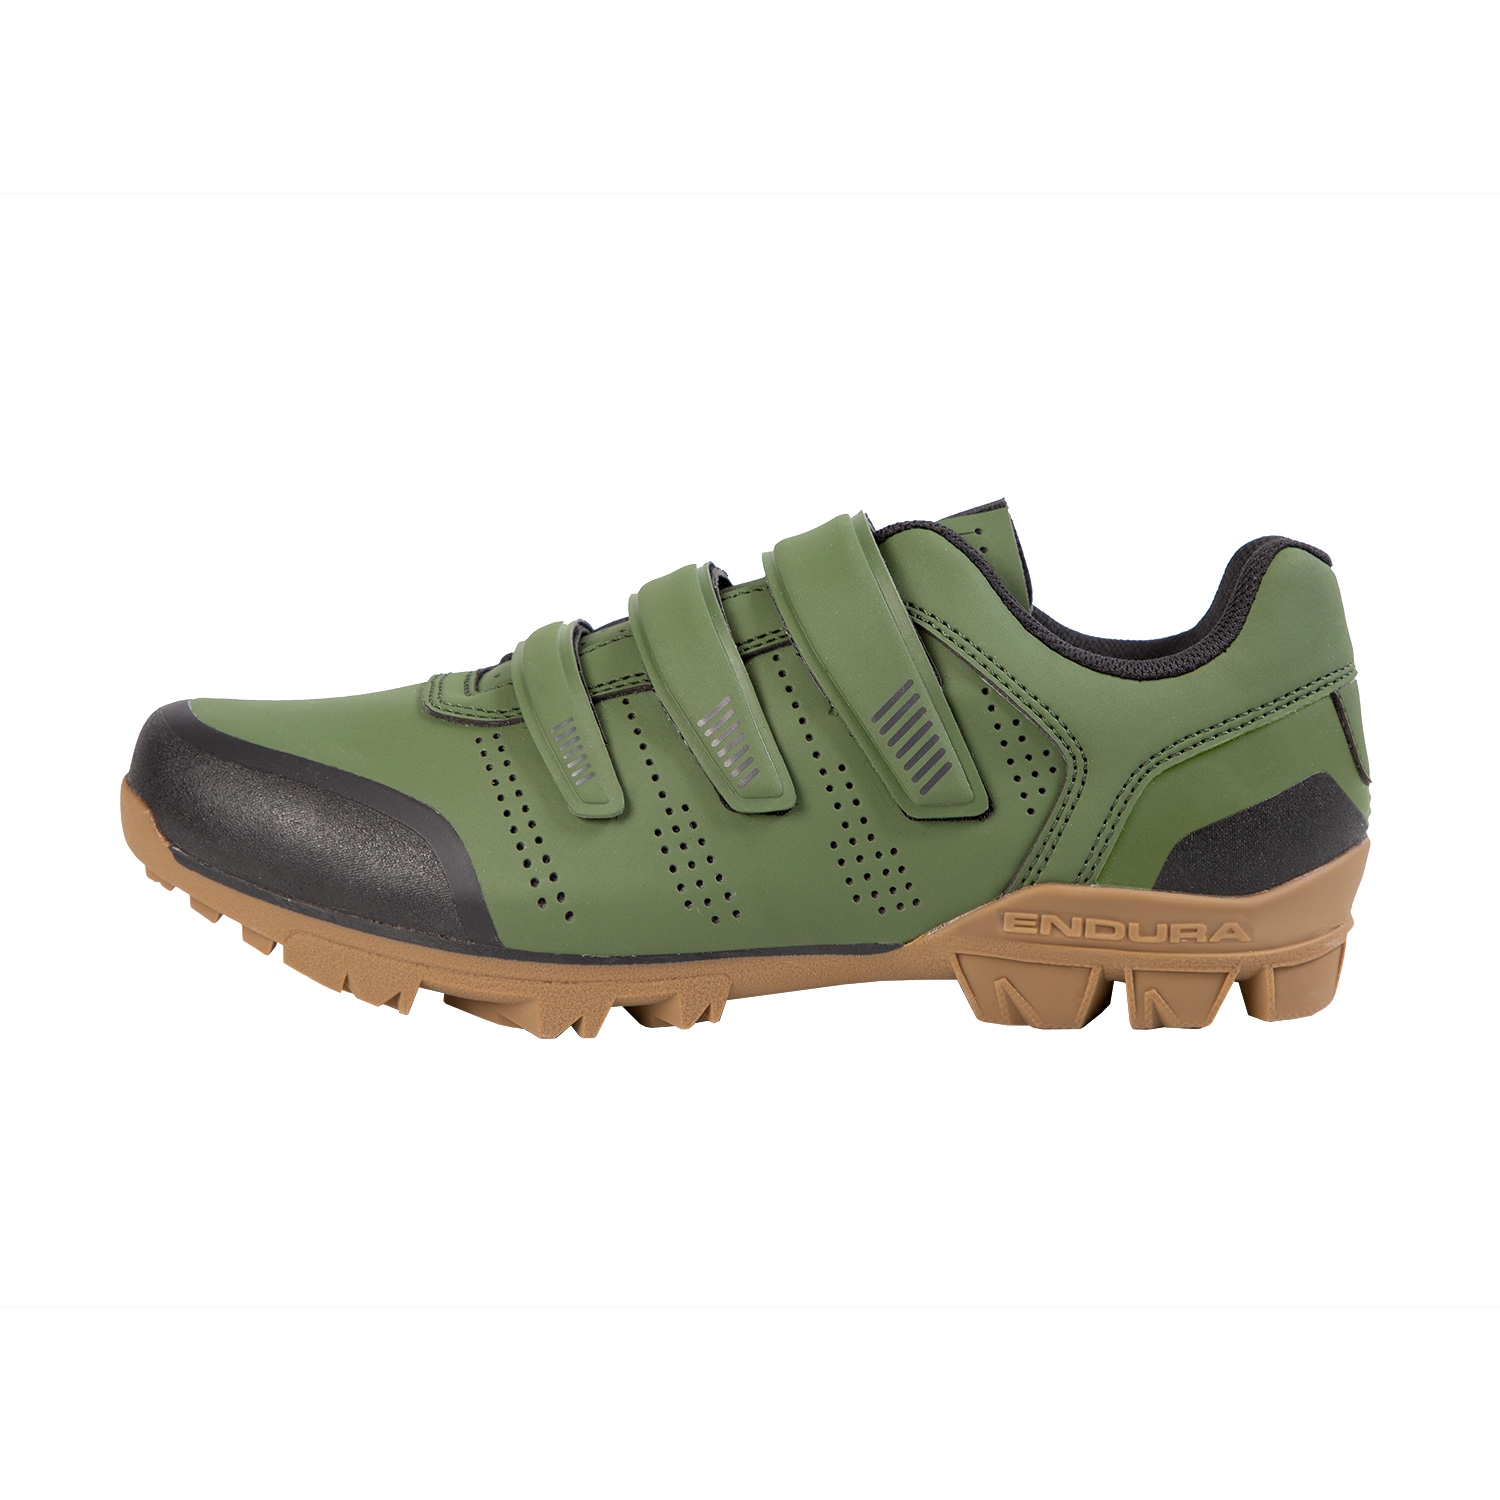 Produktbild von Endura Hummvee XC Schuhe - olivgrün